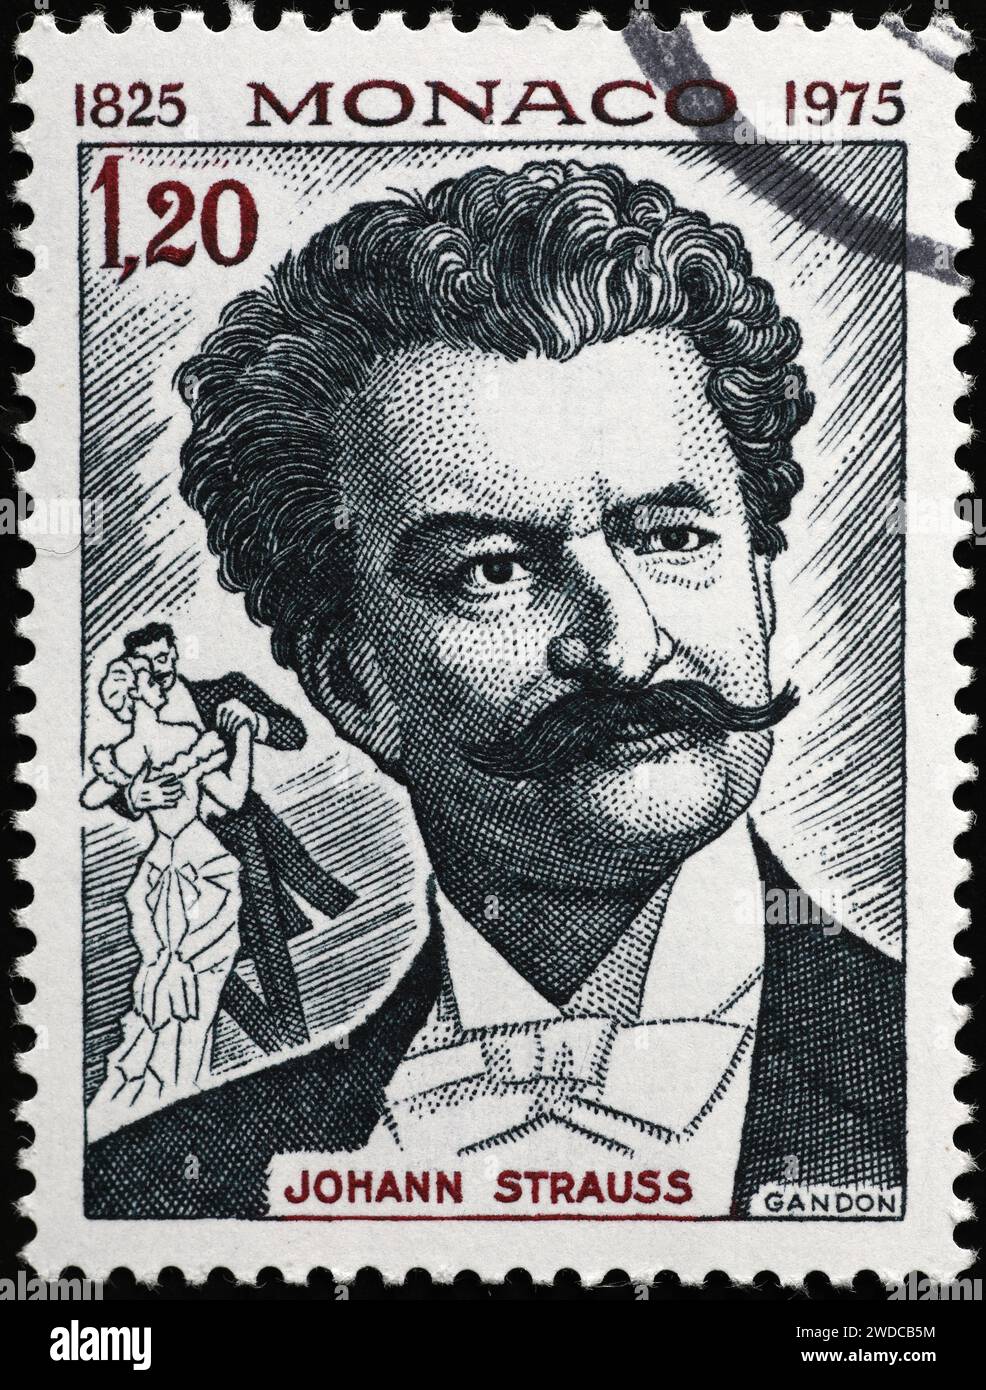 Johann Strauss auf der Briefmarke von Monaco Stockfoto